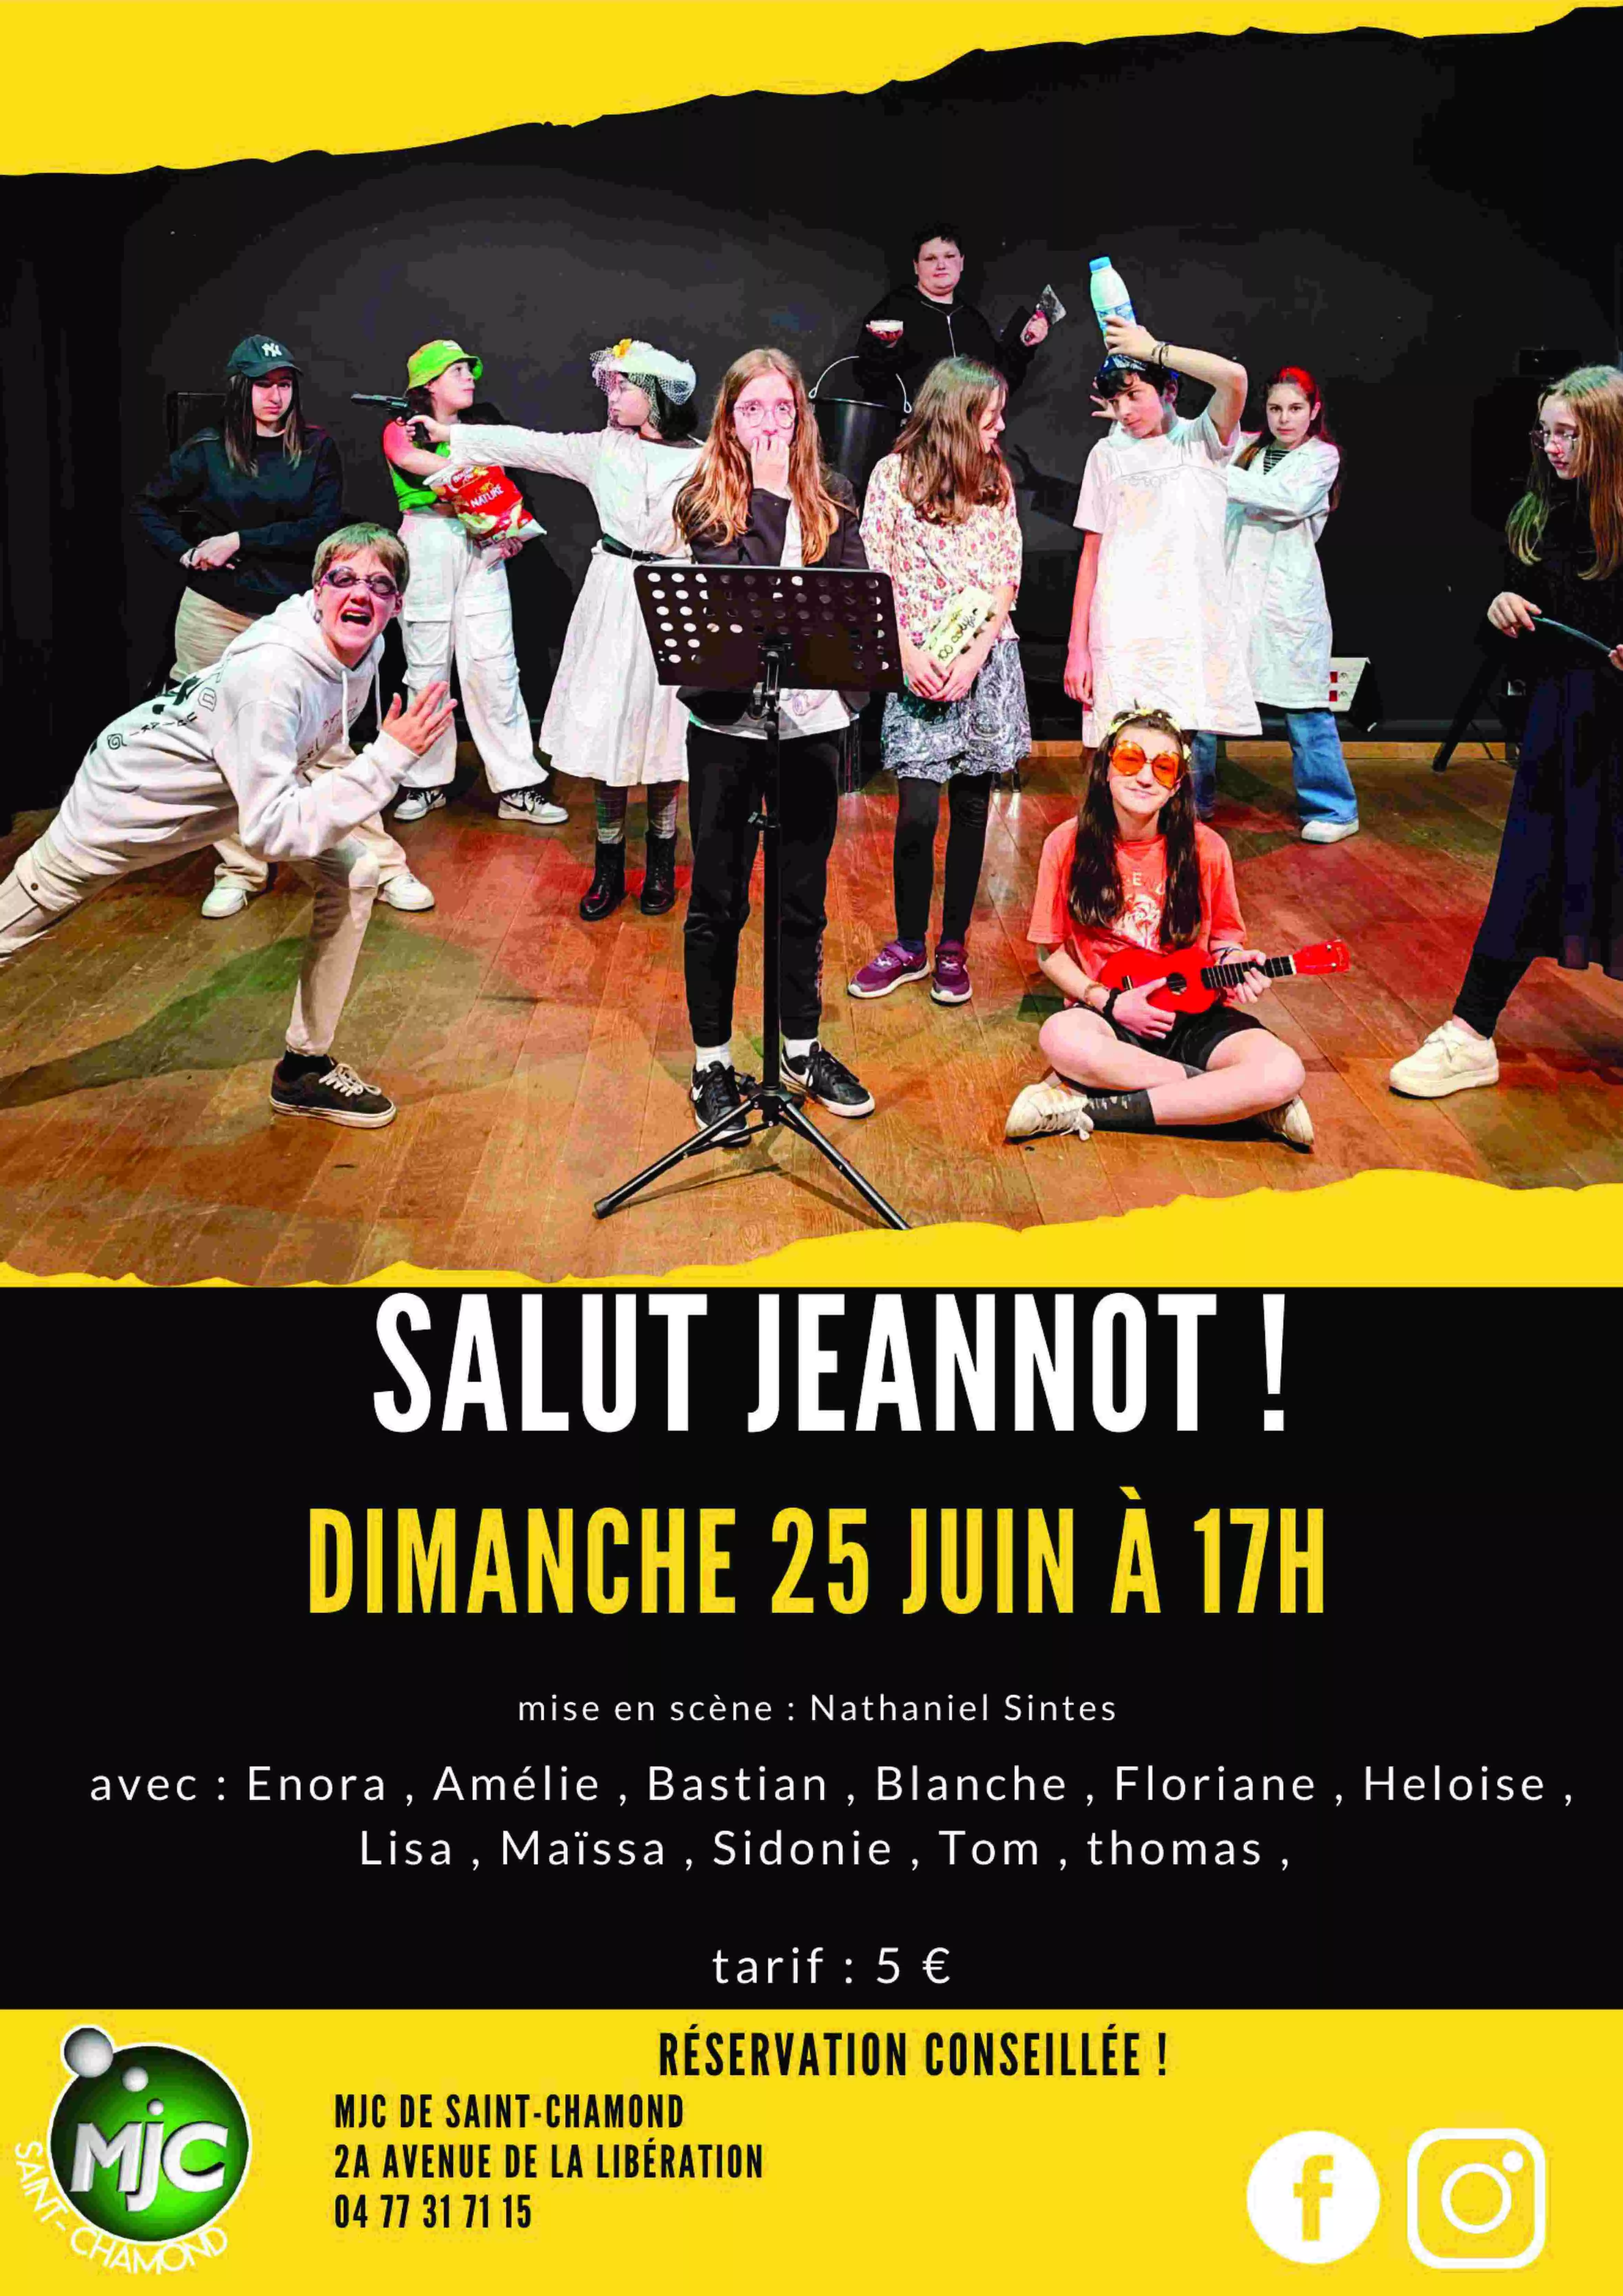 Rassemblements-Crédits : MJC de Saint-Chamond